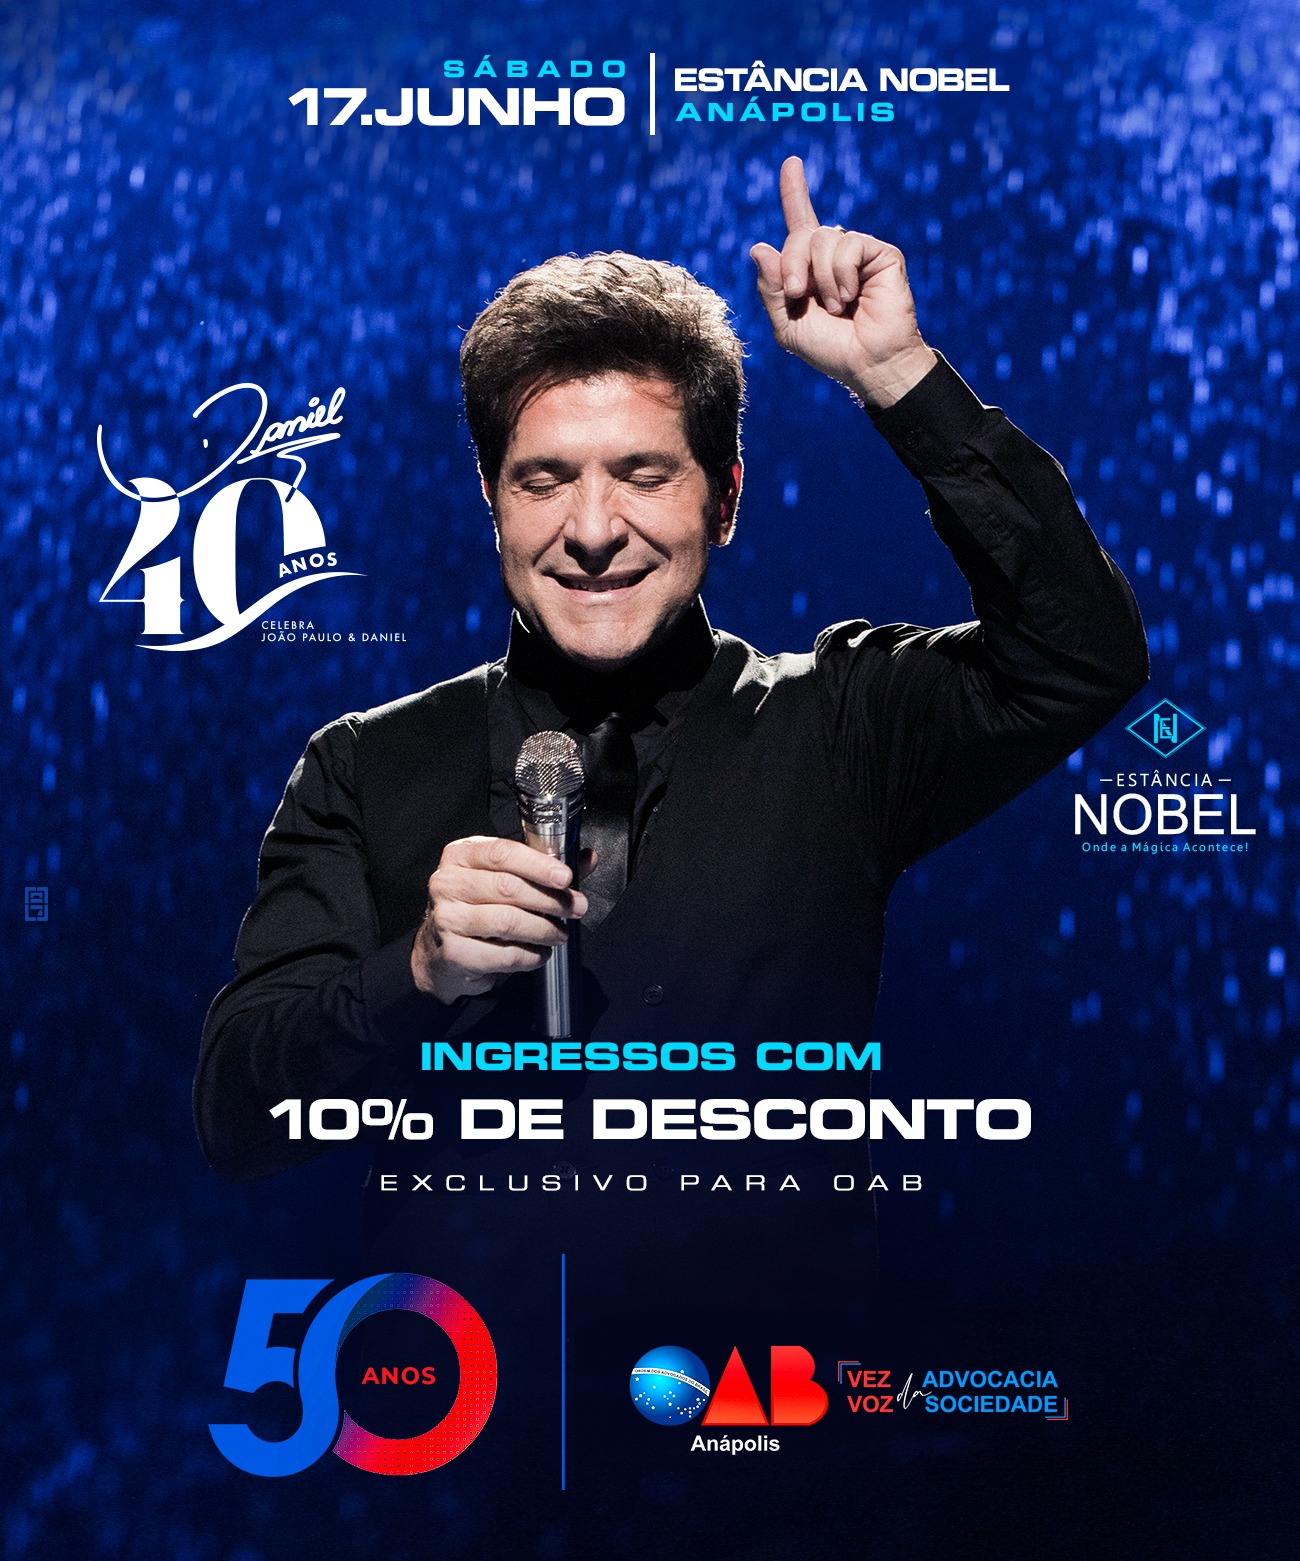 Show – Daniel celebrando João Paulo e Daniel e seus 40 anos de carreira de sucesso absoluto!